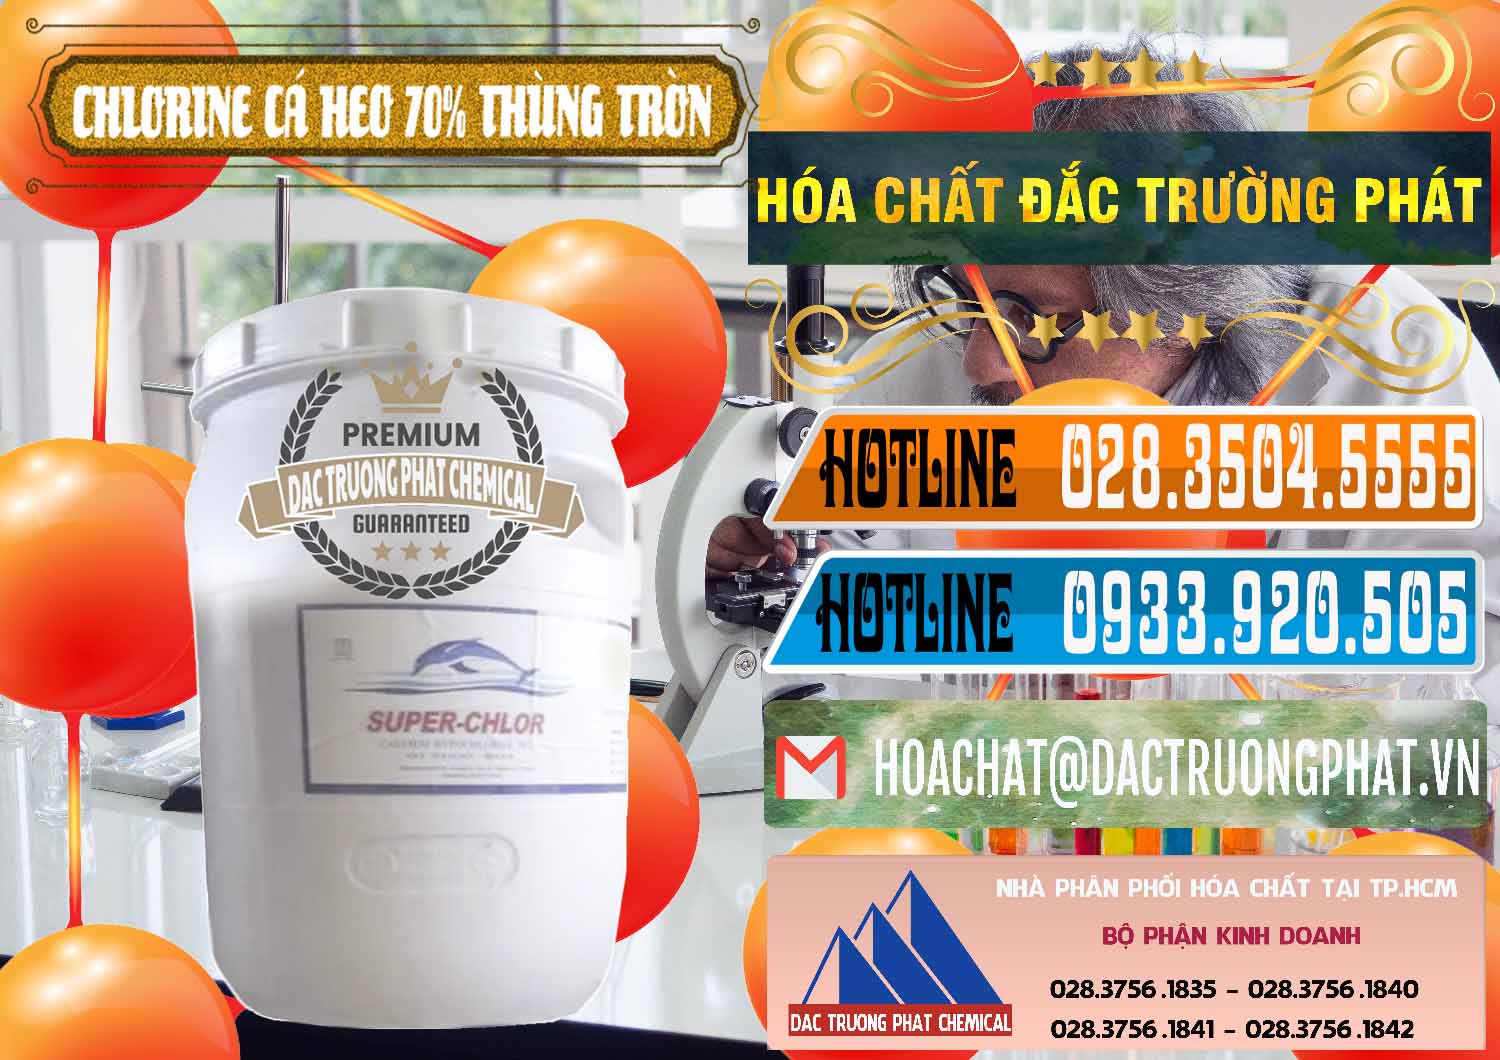 Nơi chuyên bán - phân phối Clorin - Chlorine Cá Heo 70% Super Chlor Thùng Tròn Nắp Trắng Trung Quốc China - 0239 - Công ty nhập khẩu ( phân phối ) hóa chất tại TP.HCM - stmp.net